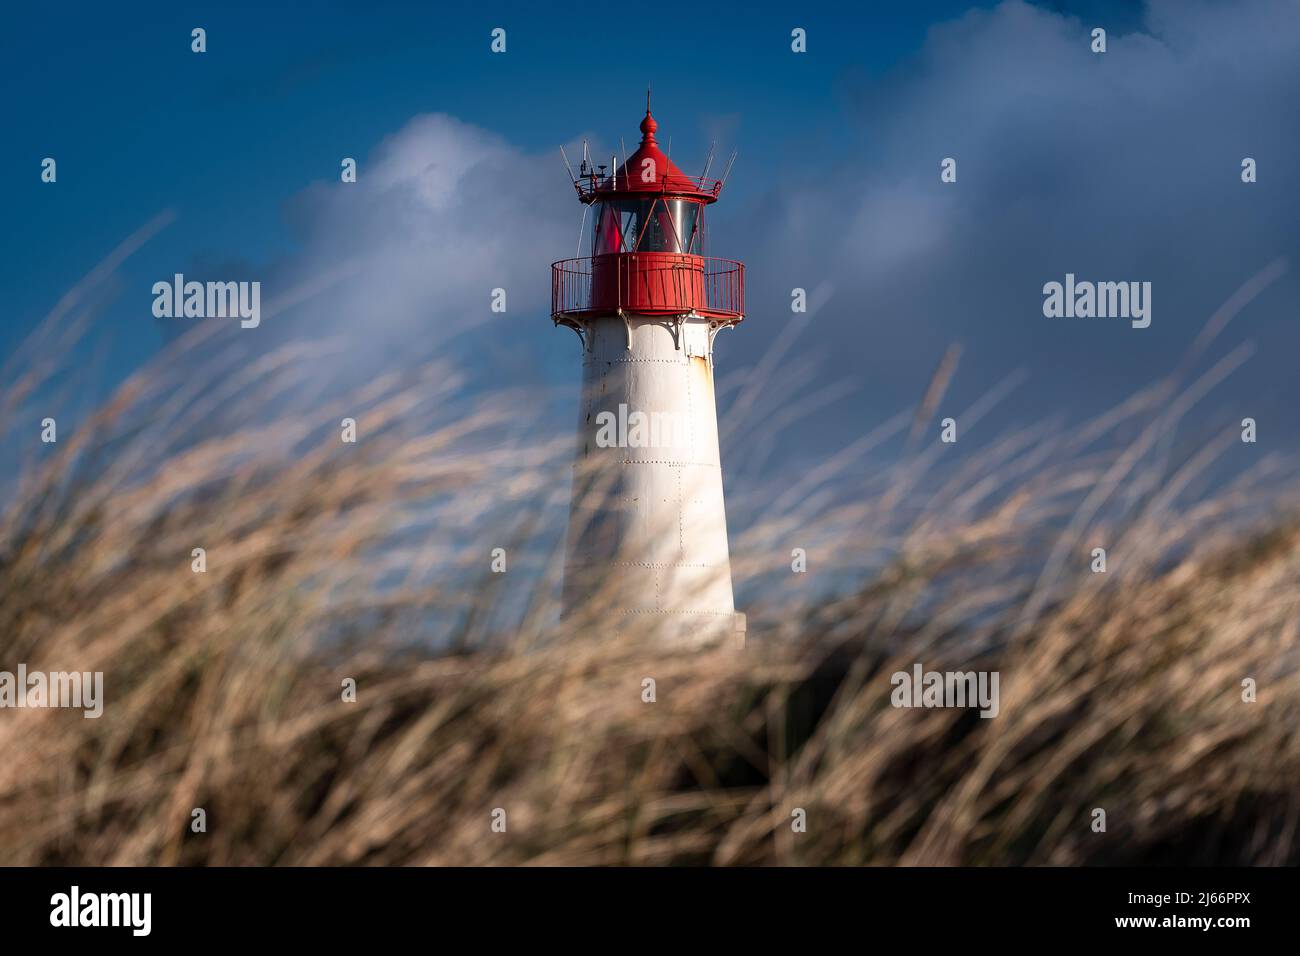 Leuchtturm auf der Insel Sylt, Nordfriesische Inseln (Allemagne) Banque D'Images